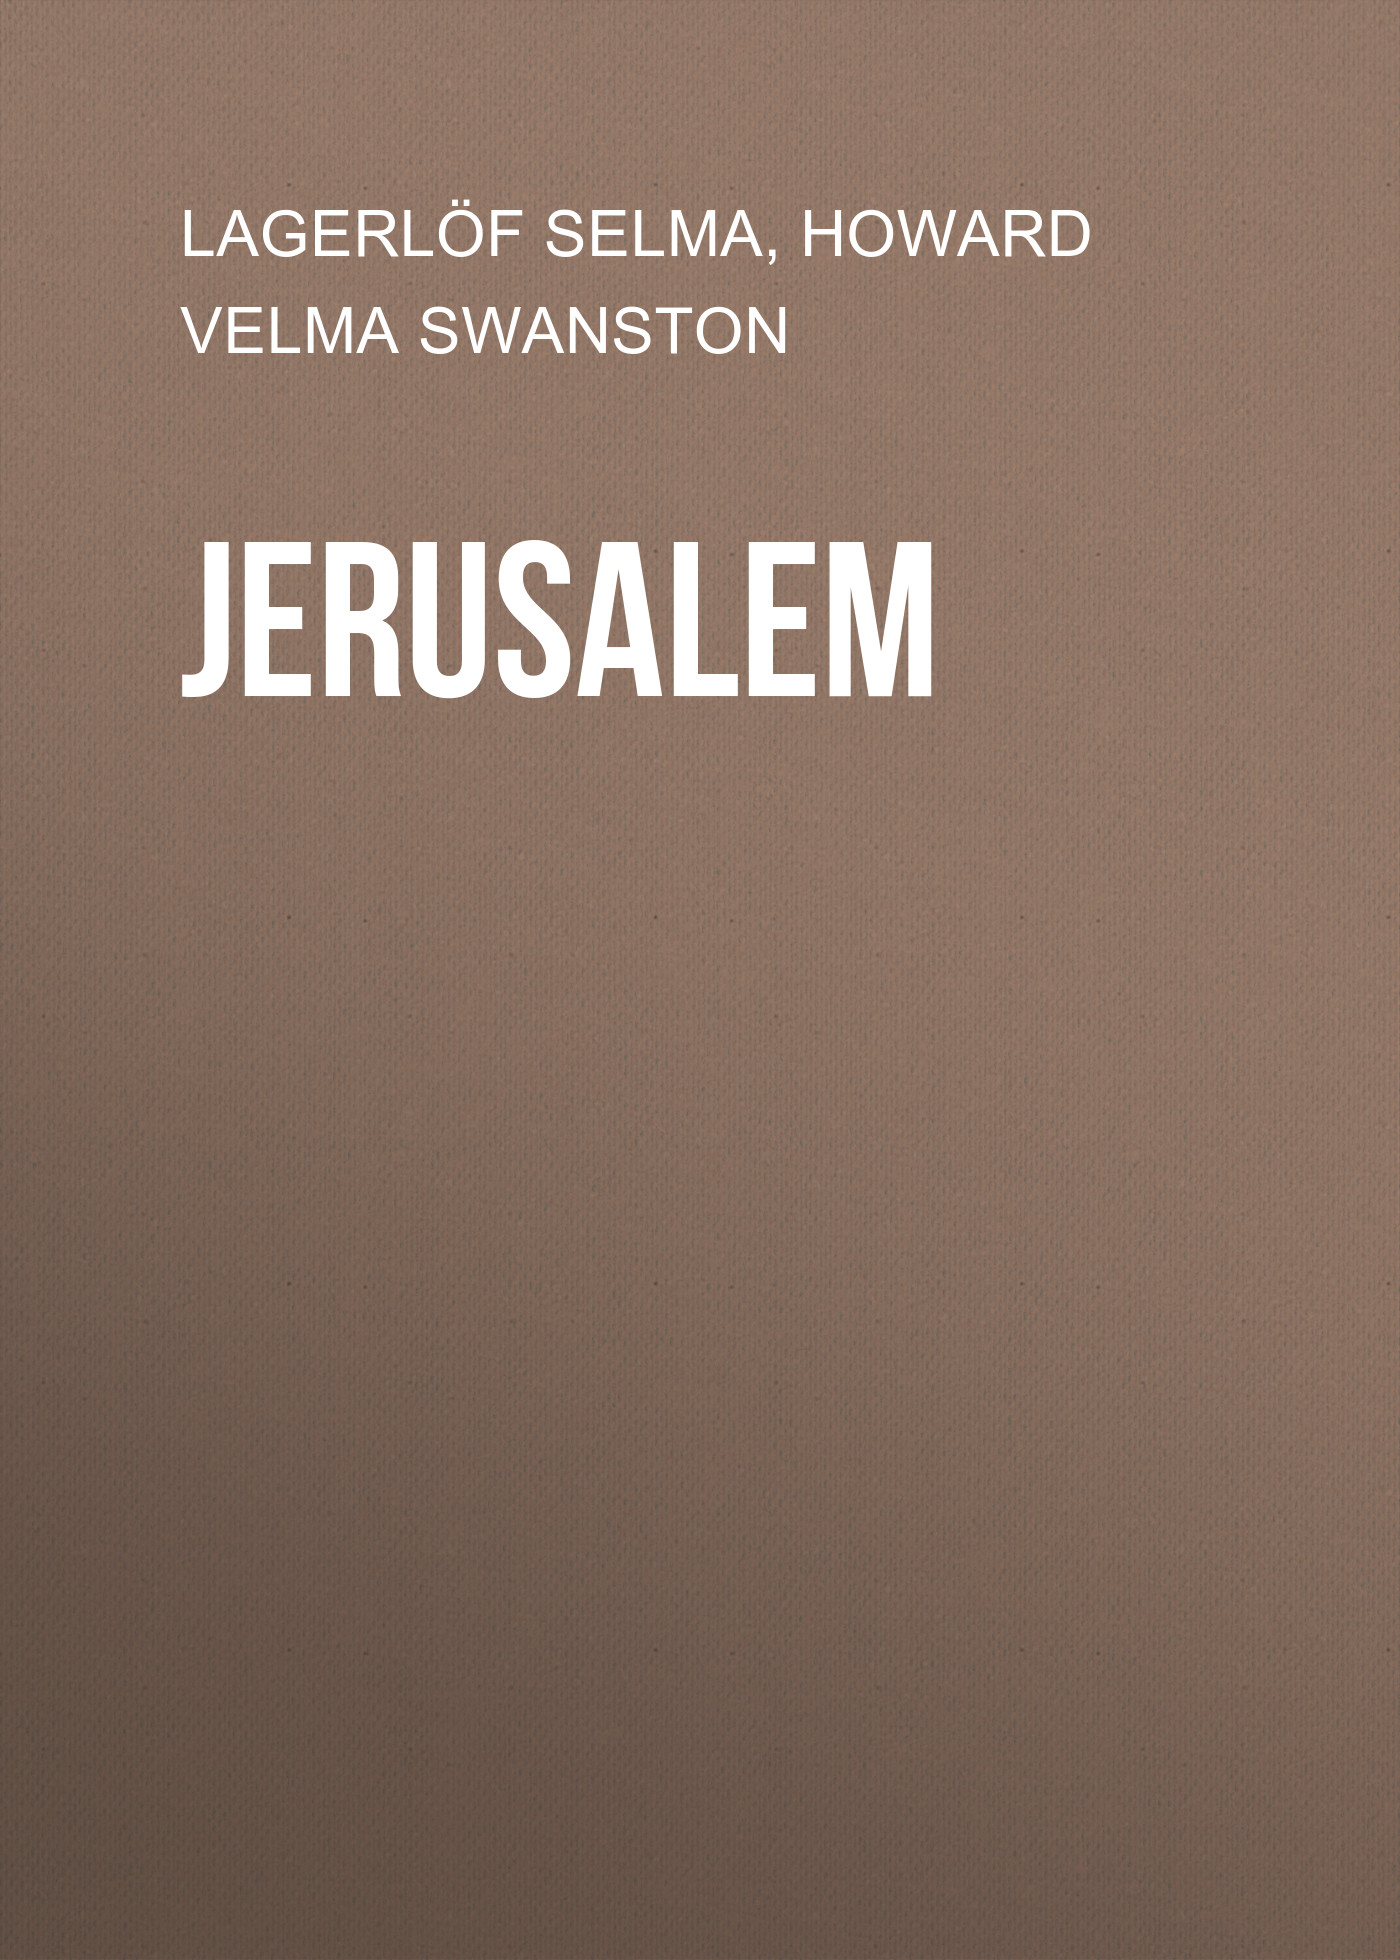 Книга Jerusalem из серии , созданная Selma Lagerlöf, Velma Howard, может относится к жанру Зарубежная старинная литература, Зарубежная классика. Стоимость электронной книги Jerusalem с идентификатором 25229988 составляет 0 руб.